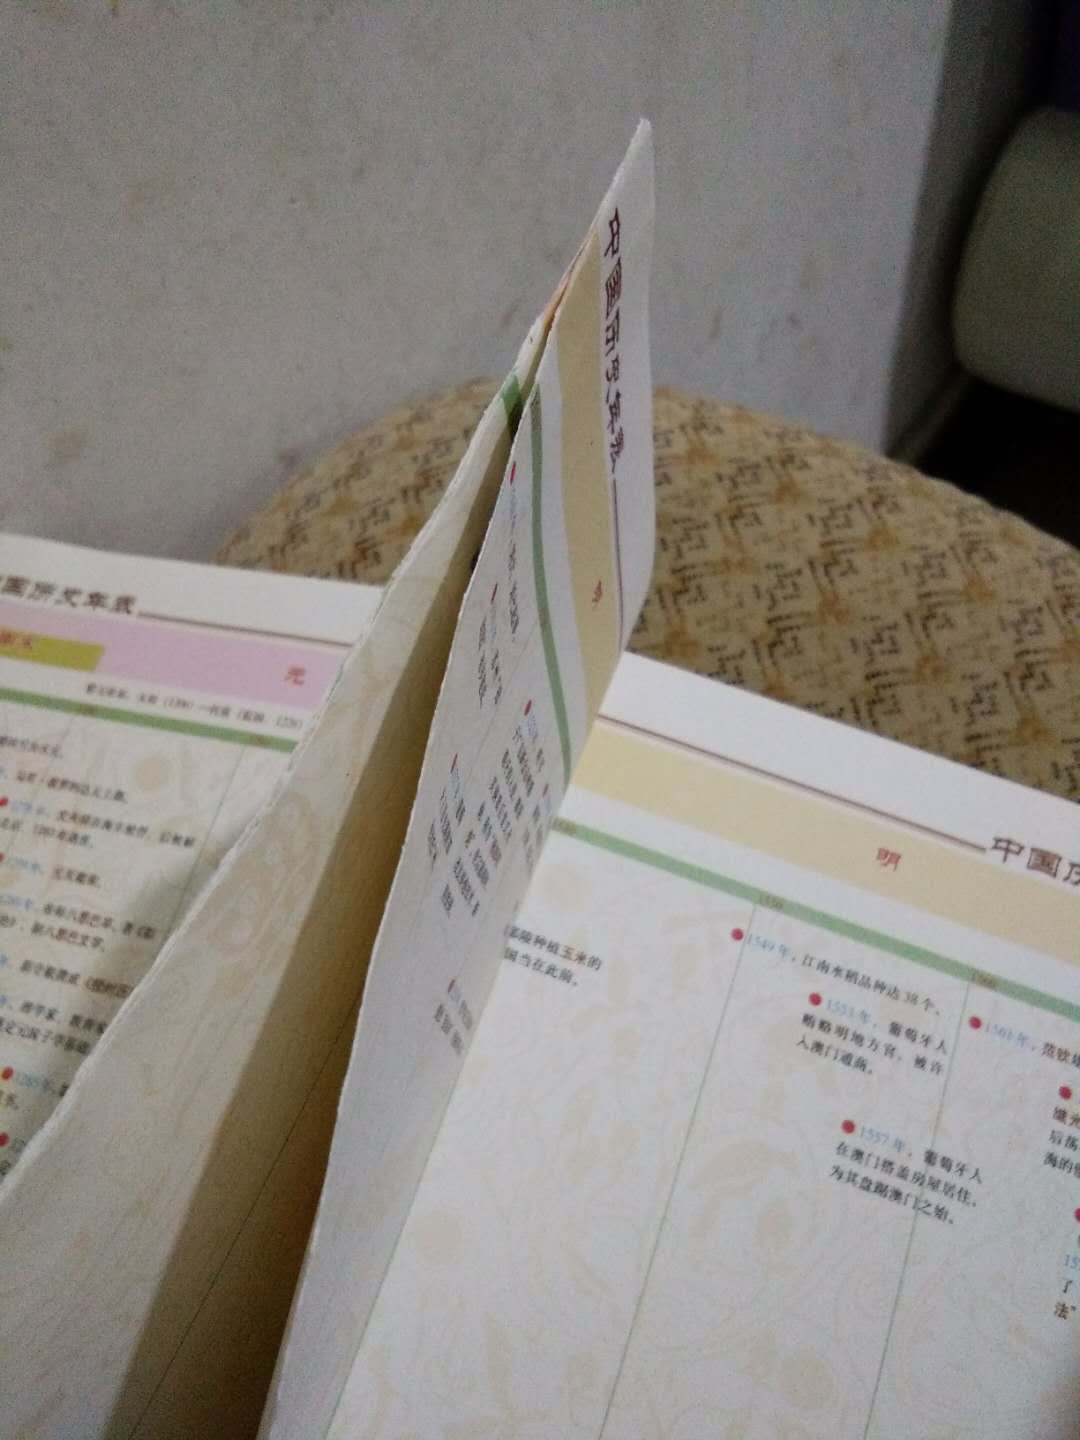 问道有点大，本来看是中华书局的书很期待，唉，很多地方连在一起也撕不开，最后一页也未装订好